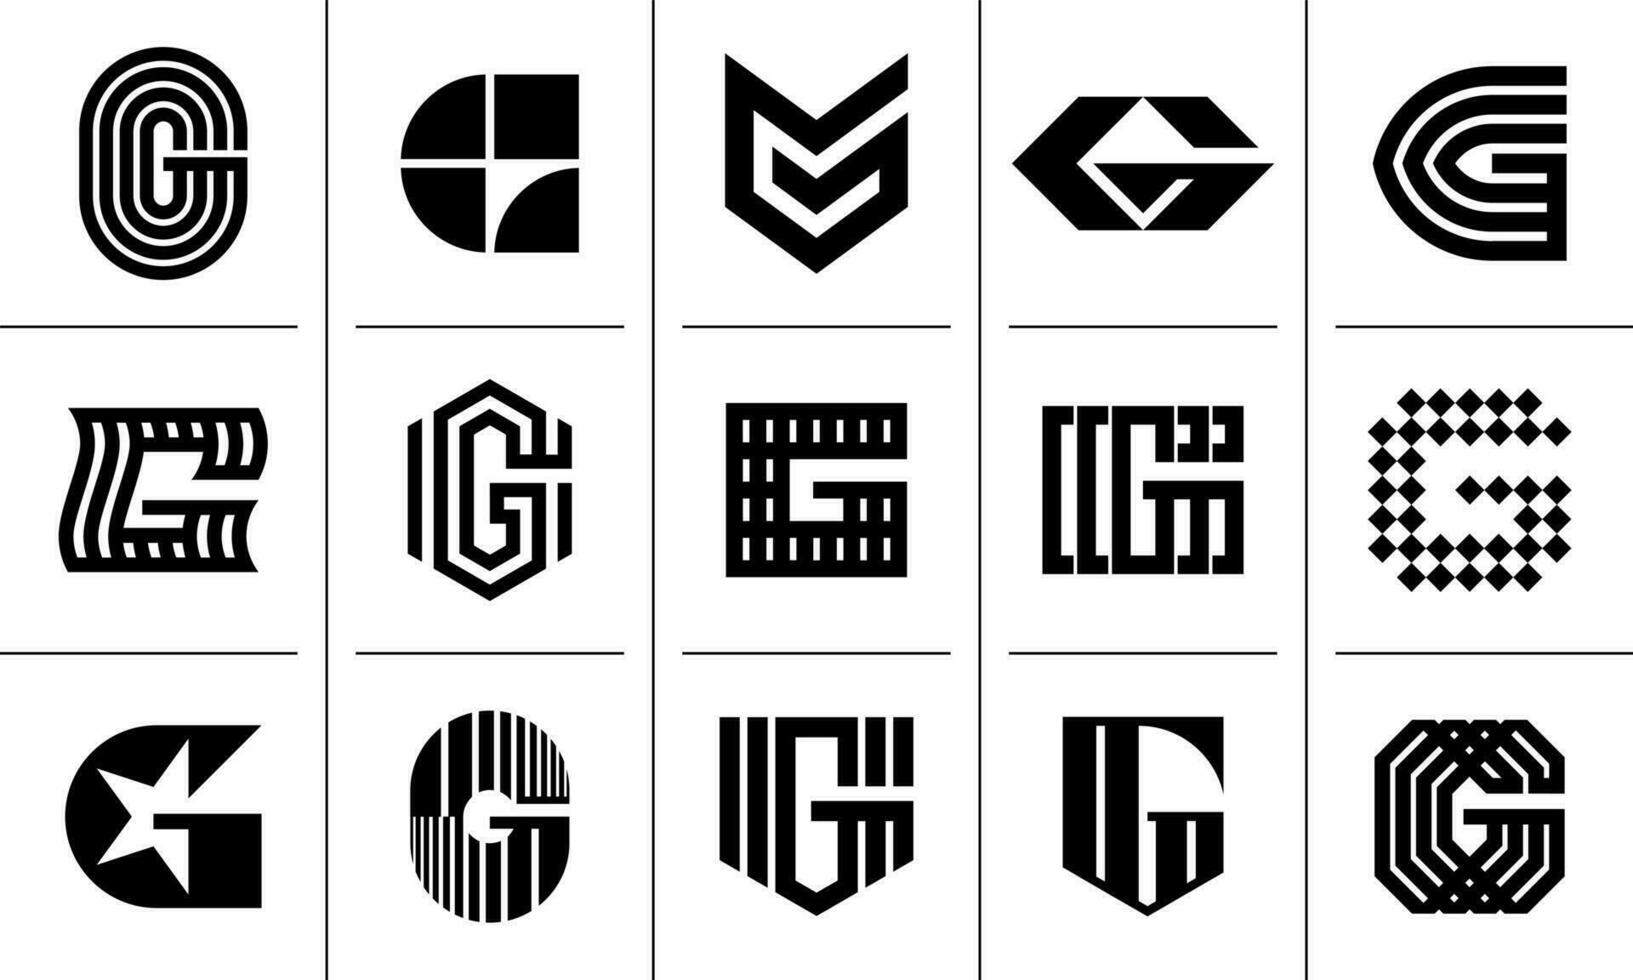 Modern initial letter G logo icon design set vector